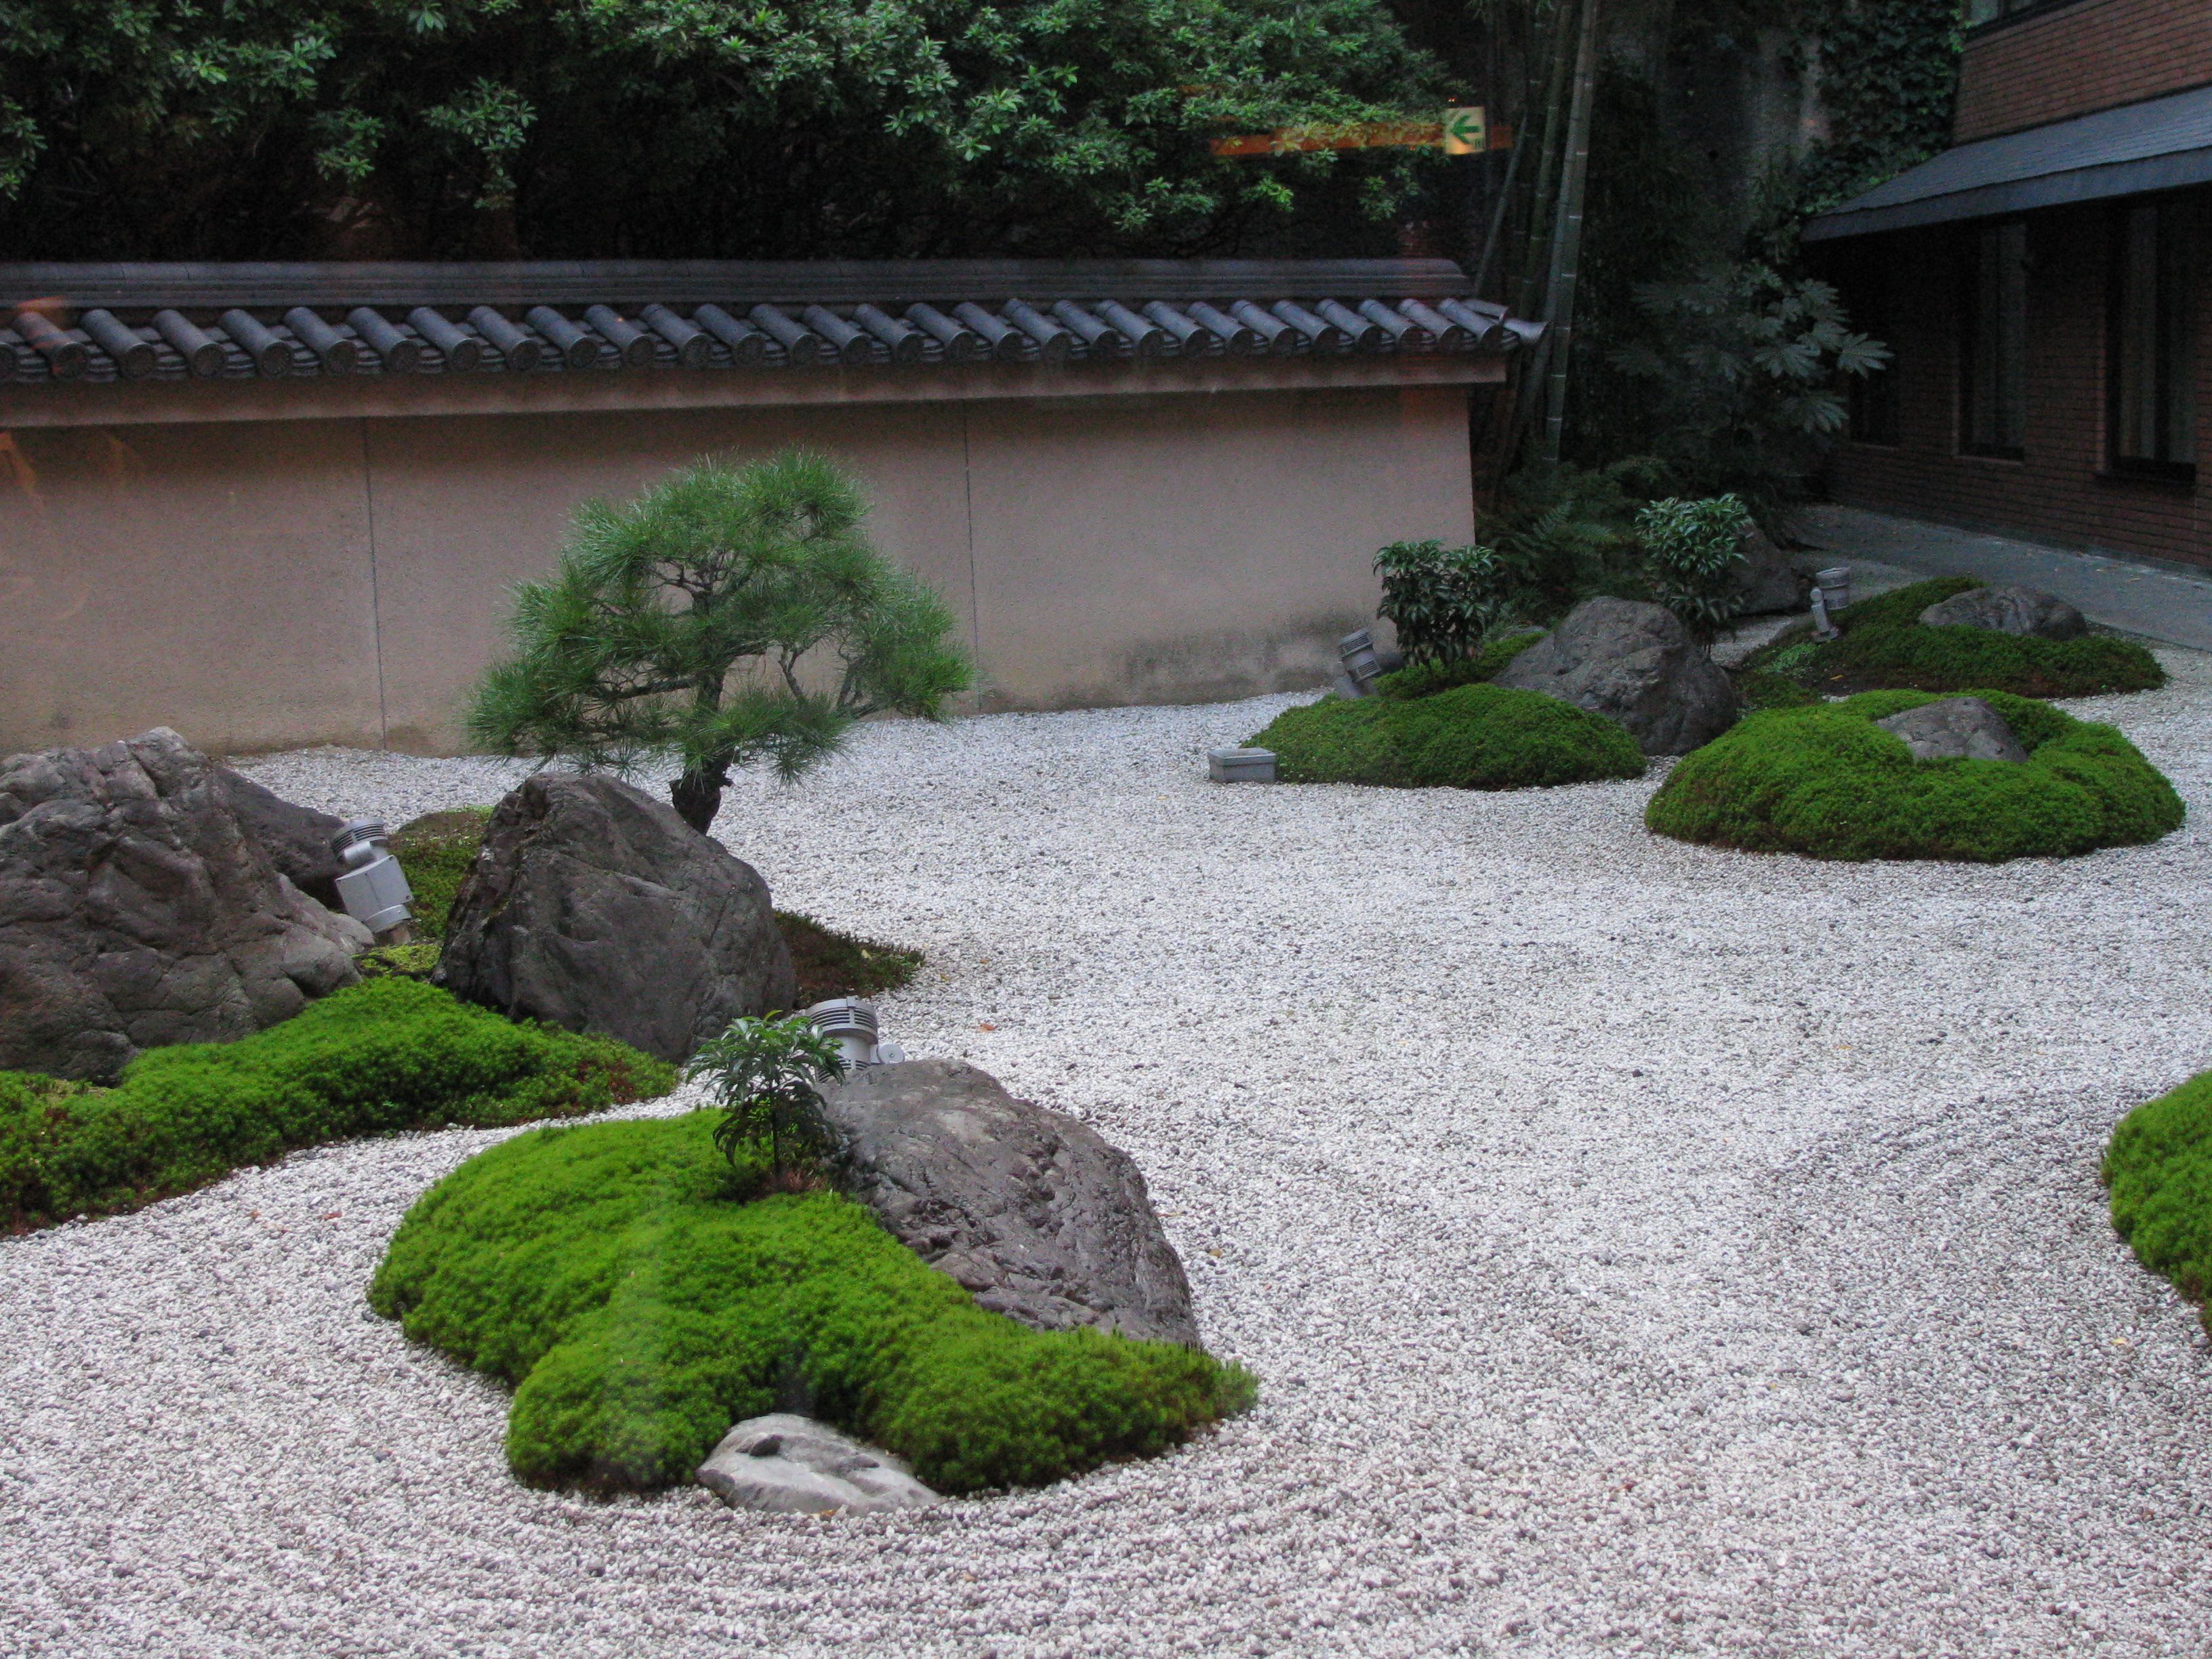 japanese garden examples - Google Search | Japanese Garden ...